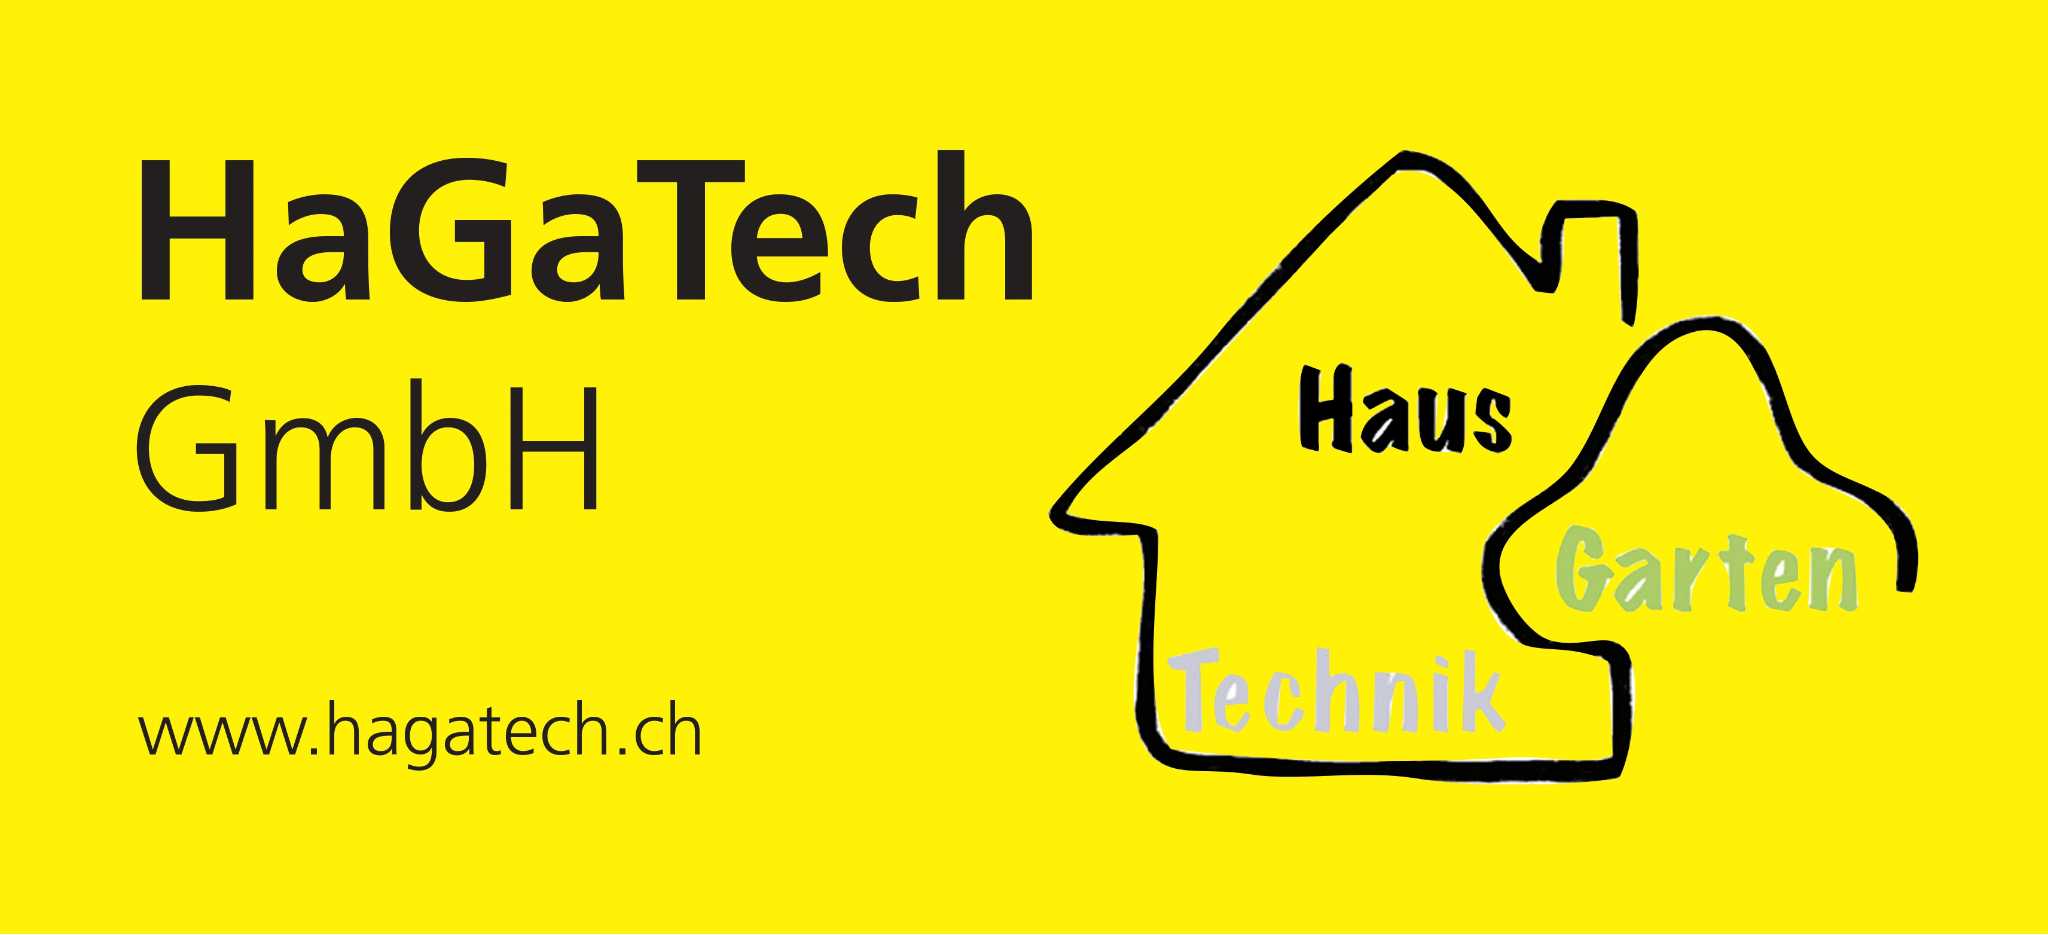 HaGaTech GmbH